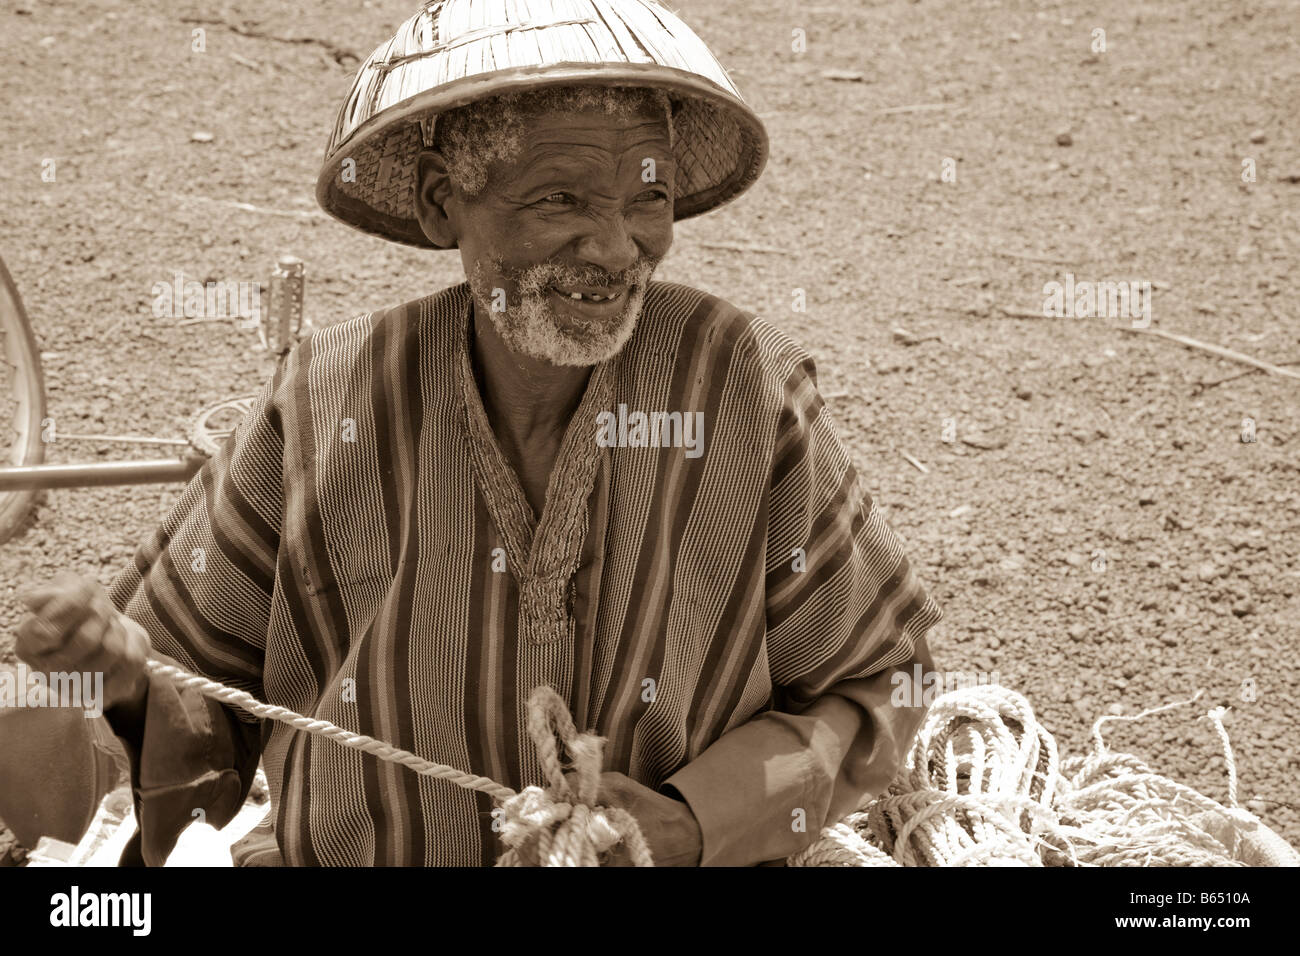 Un vieil homme Peul se trouve en face du marché des animaux à Kaya, Burkina Faso le tissage d'acier qu'il vend à l'marketgoers. Banque D'Images